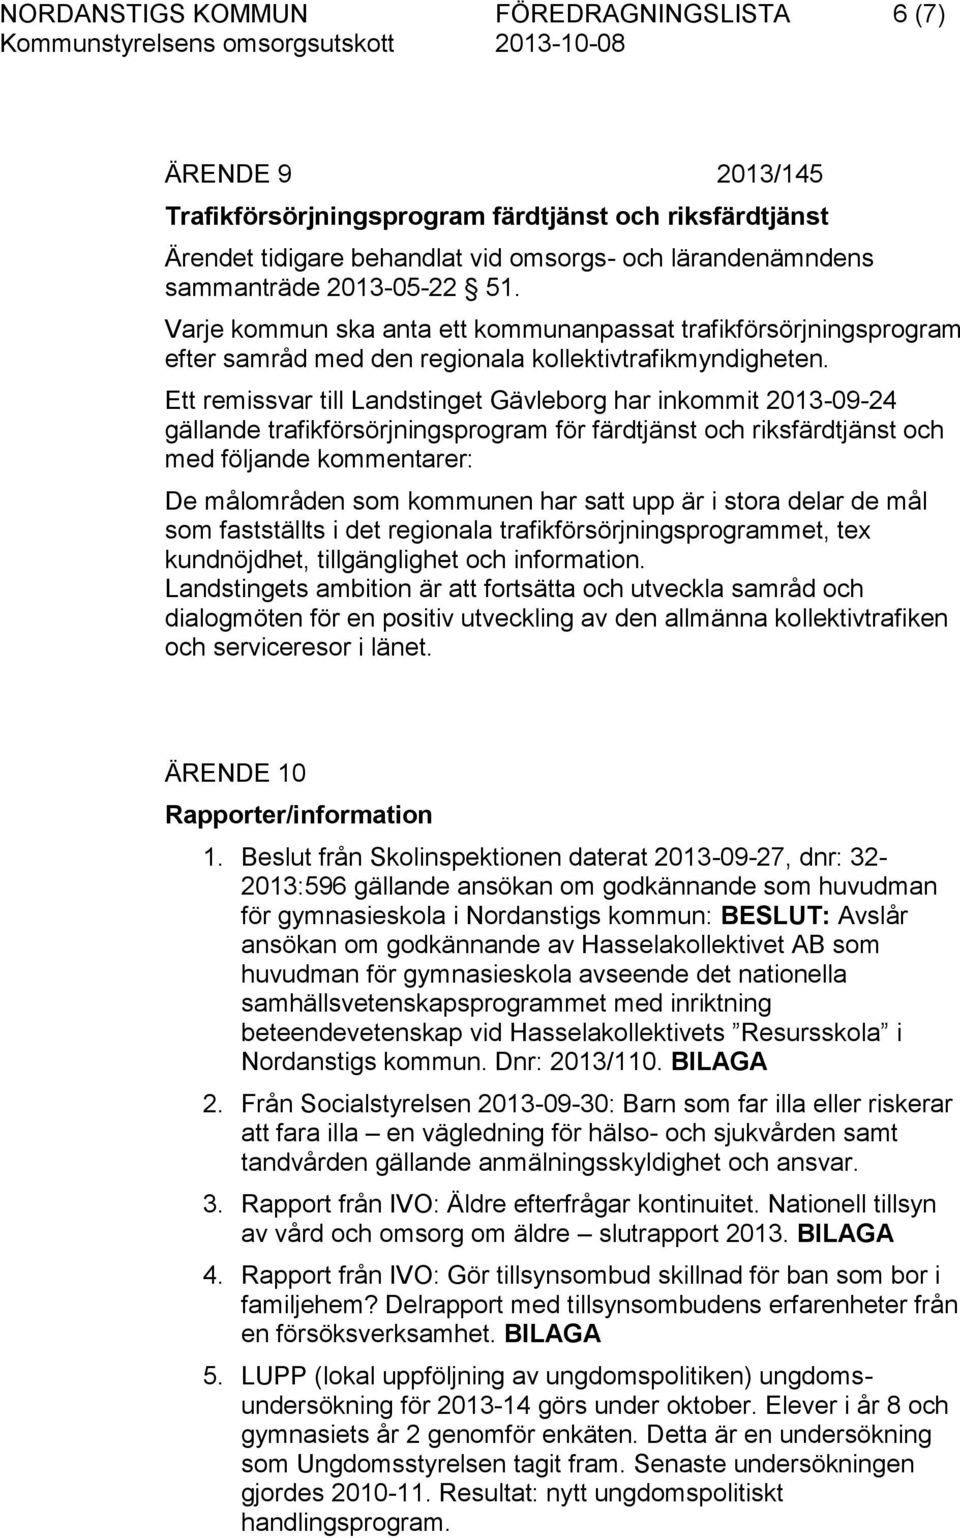 Ett remissvar till Landstinget Gävleborg har inkommit 2013-09-24 gällande trafikförsörjningsprogram för färdtjänst och riksfärdtjänst och med följande kommentarer: De målområden som kommunen har satt